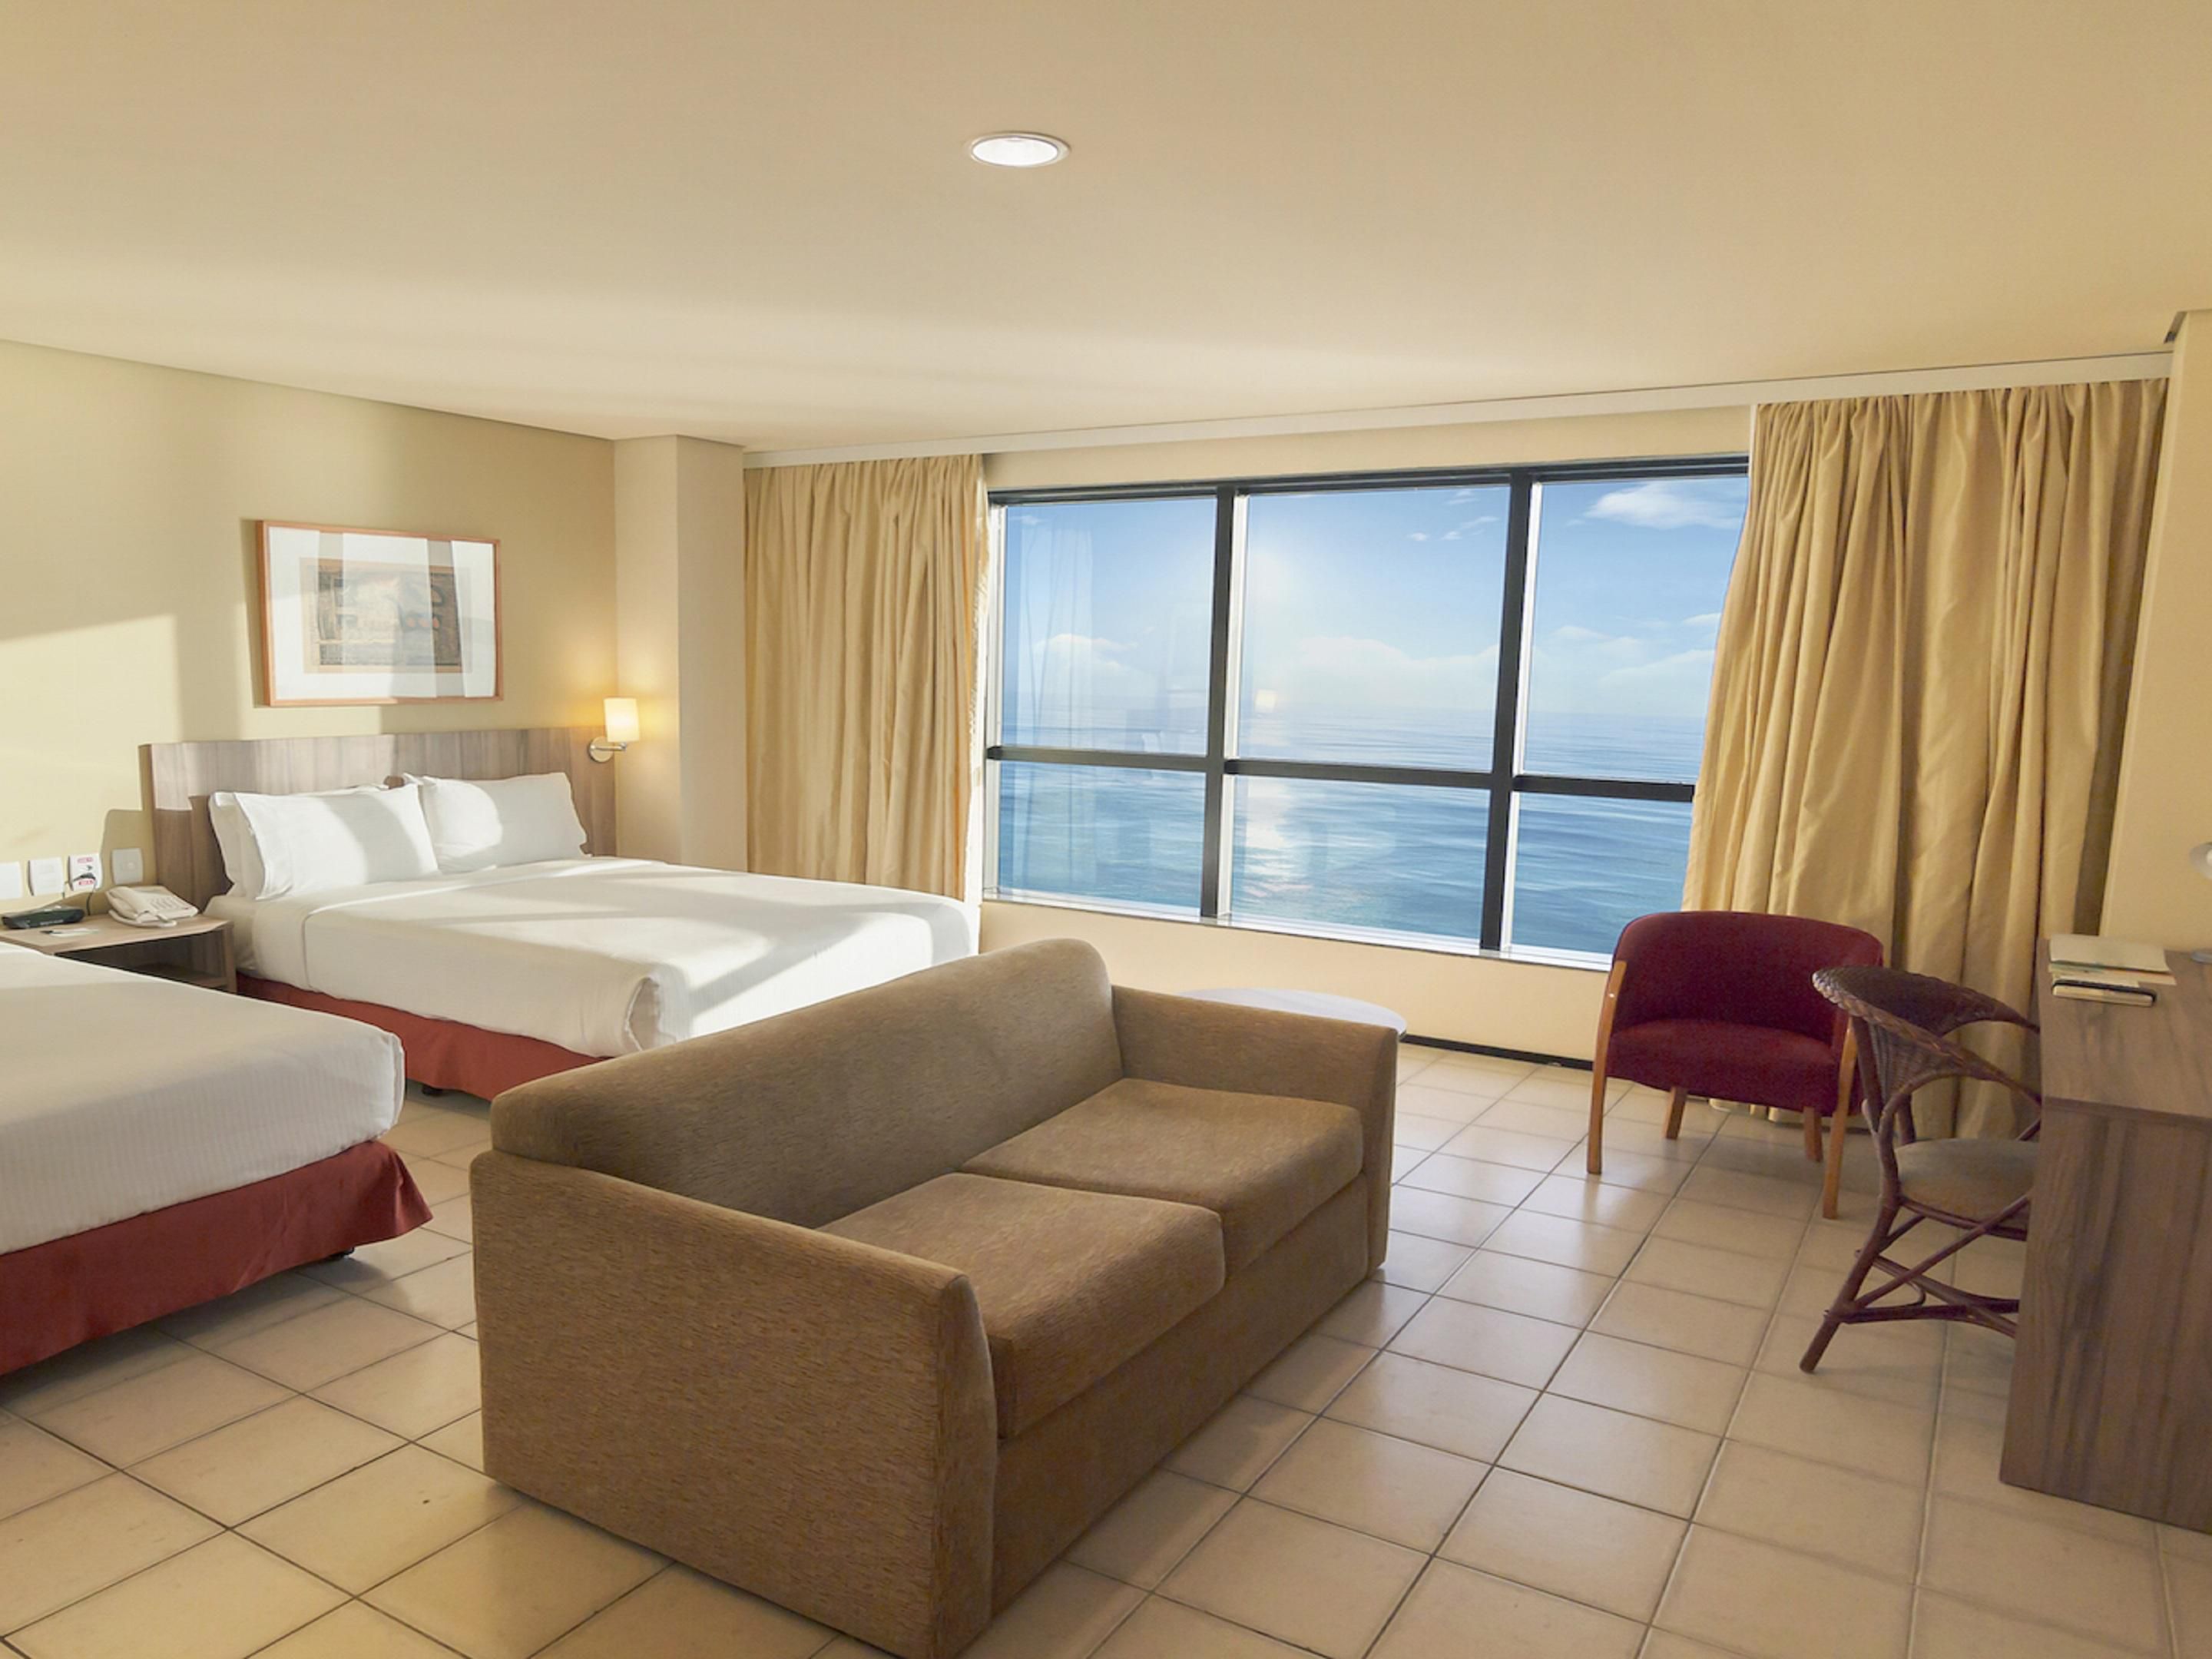 O Holiday Inn Fortaleza possui 273 apartamentos, arquitetura estratégica e localização privilegiada. Todos os apartamentos oferecem uma bela vista do oceano para a praia de Iracema.